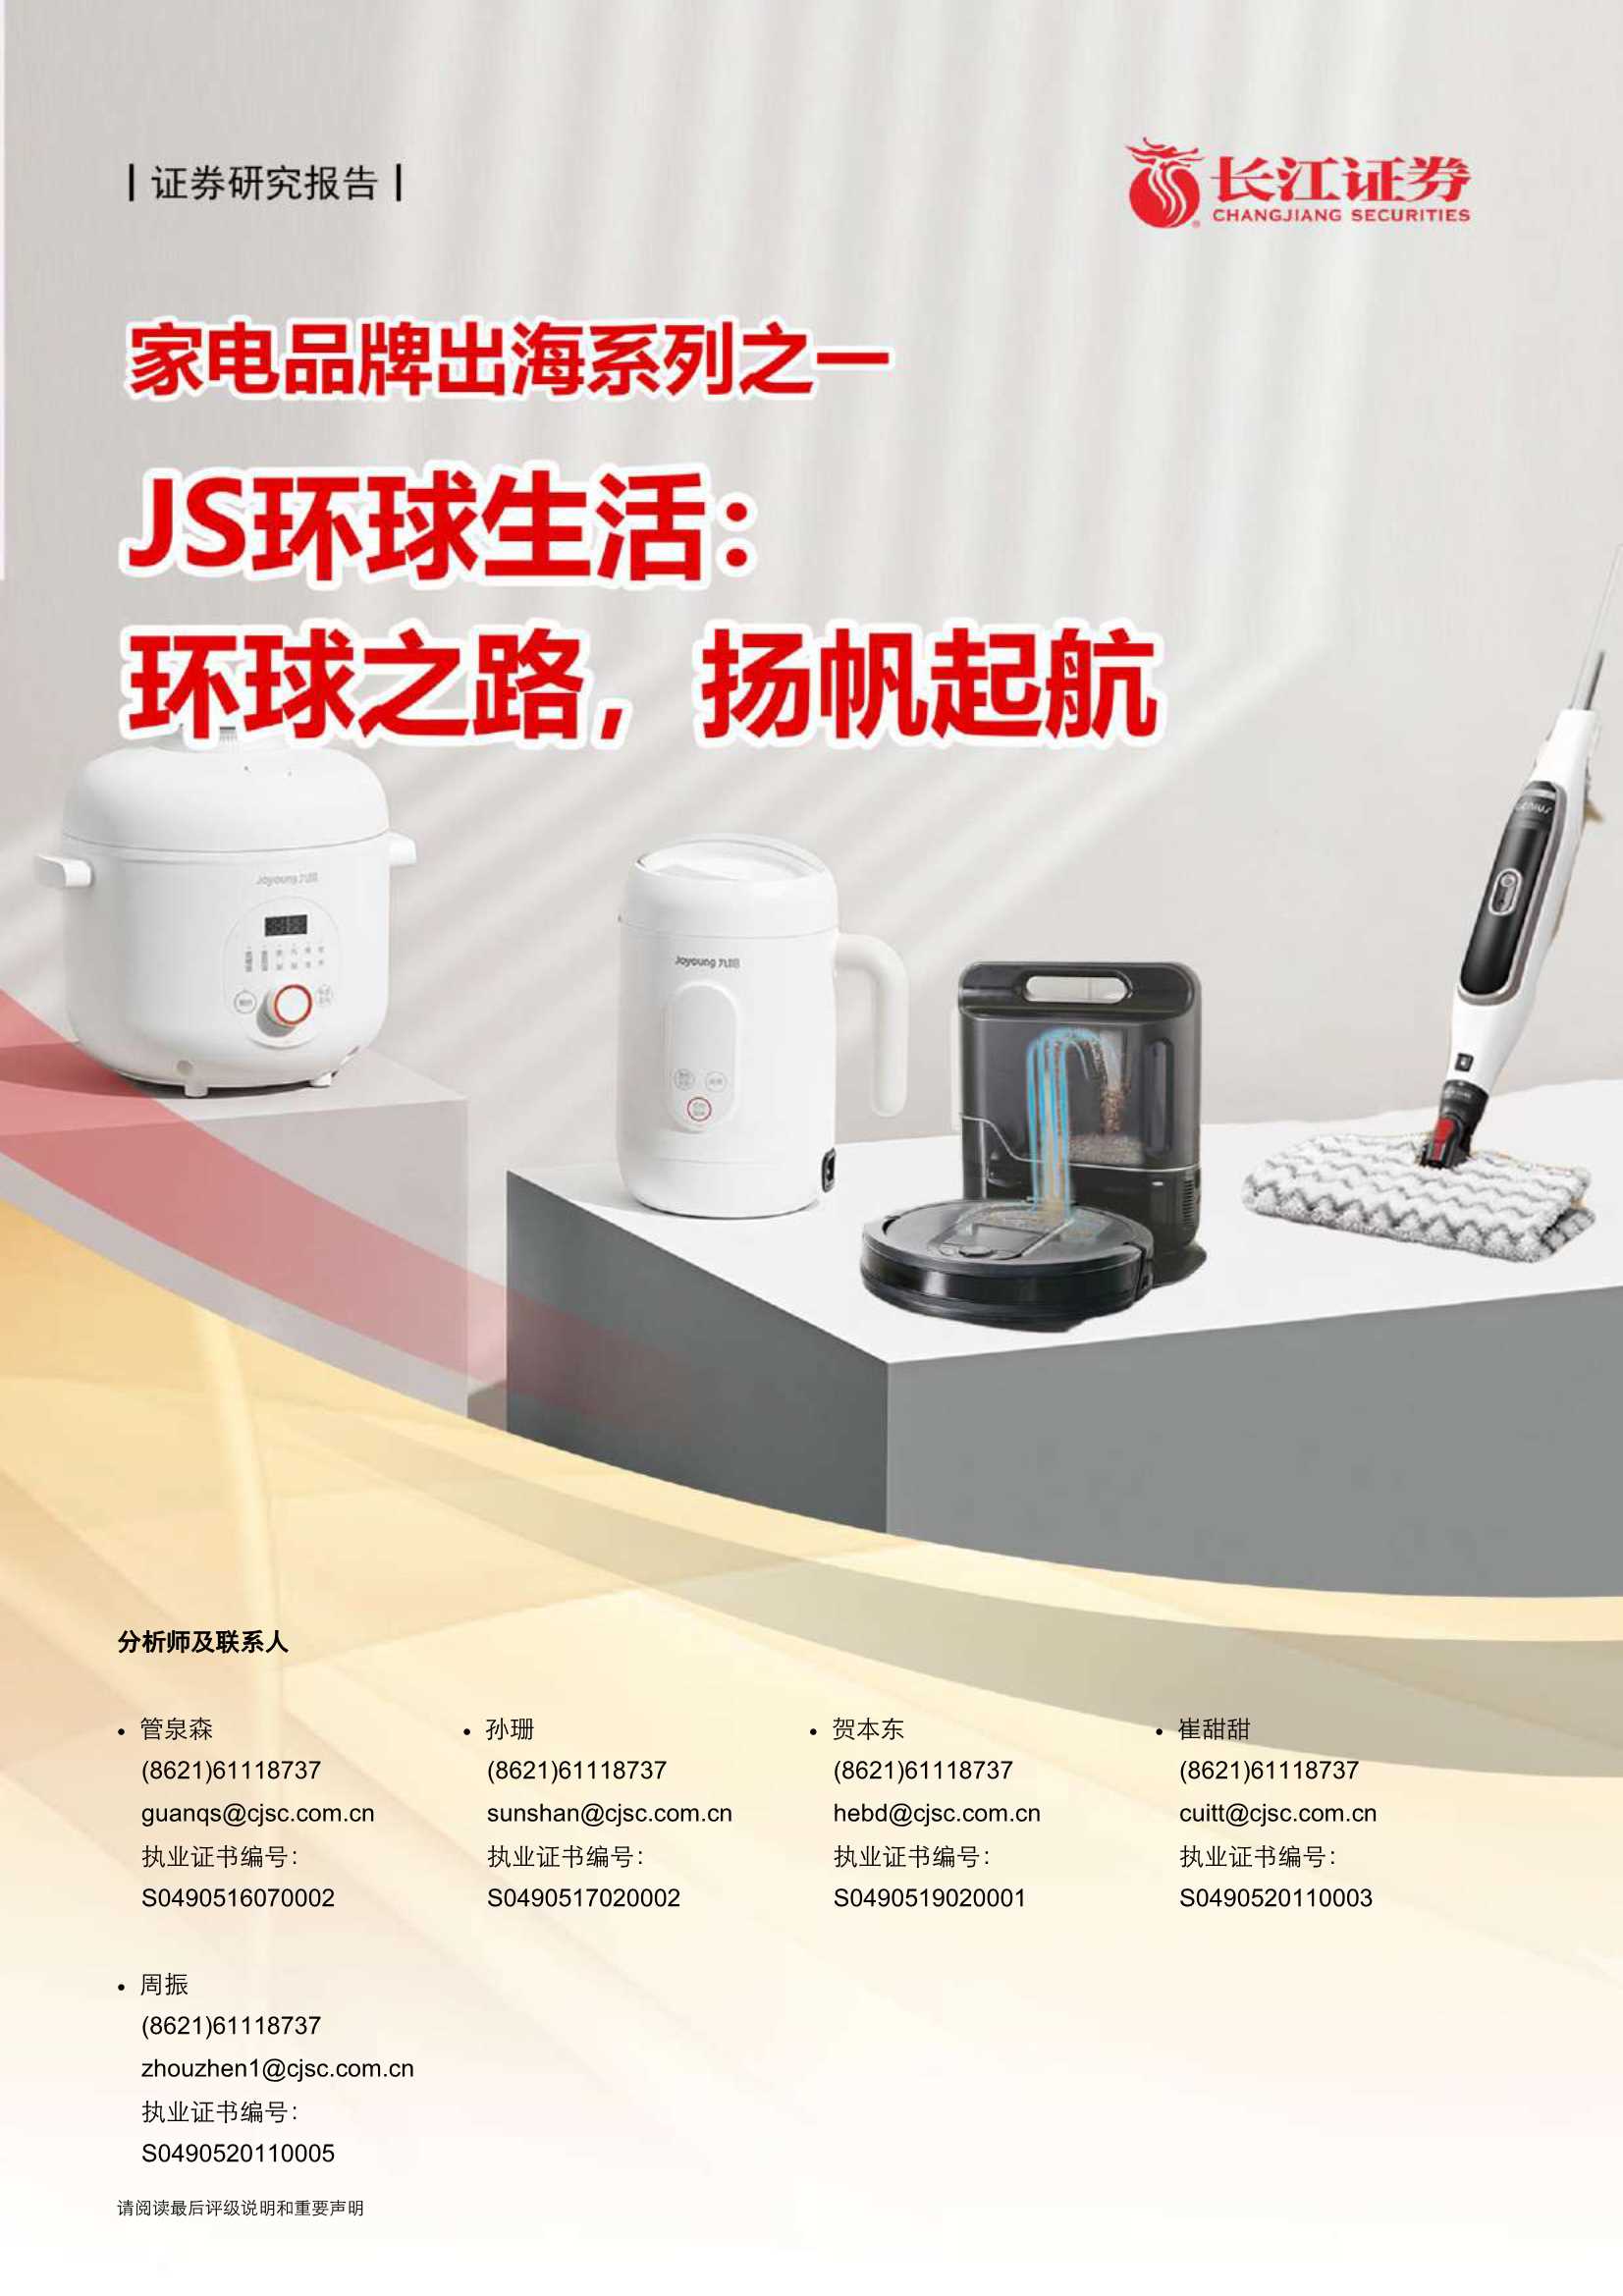 长江证券-JS环球生活（1691.HK）：家电品牌出海系列之一：环球之路，扬帆起航-20210518-31页